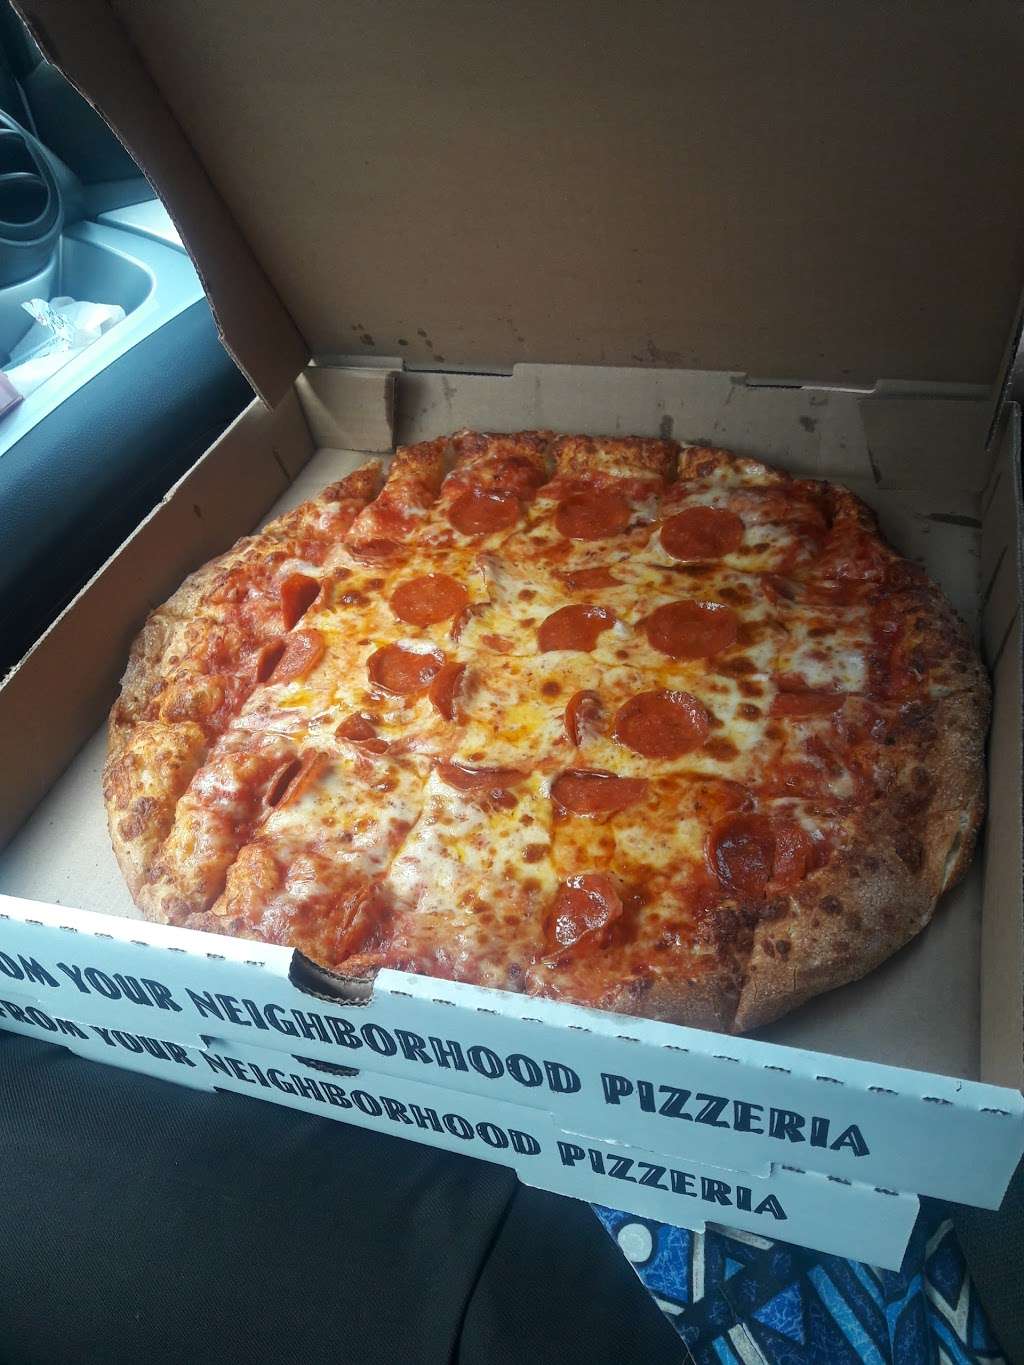 Big Papas Pizza | 6583 Atlantic Ave, Long Beach, CA 90805 | Phone: (562) 728-1011